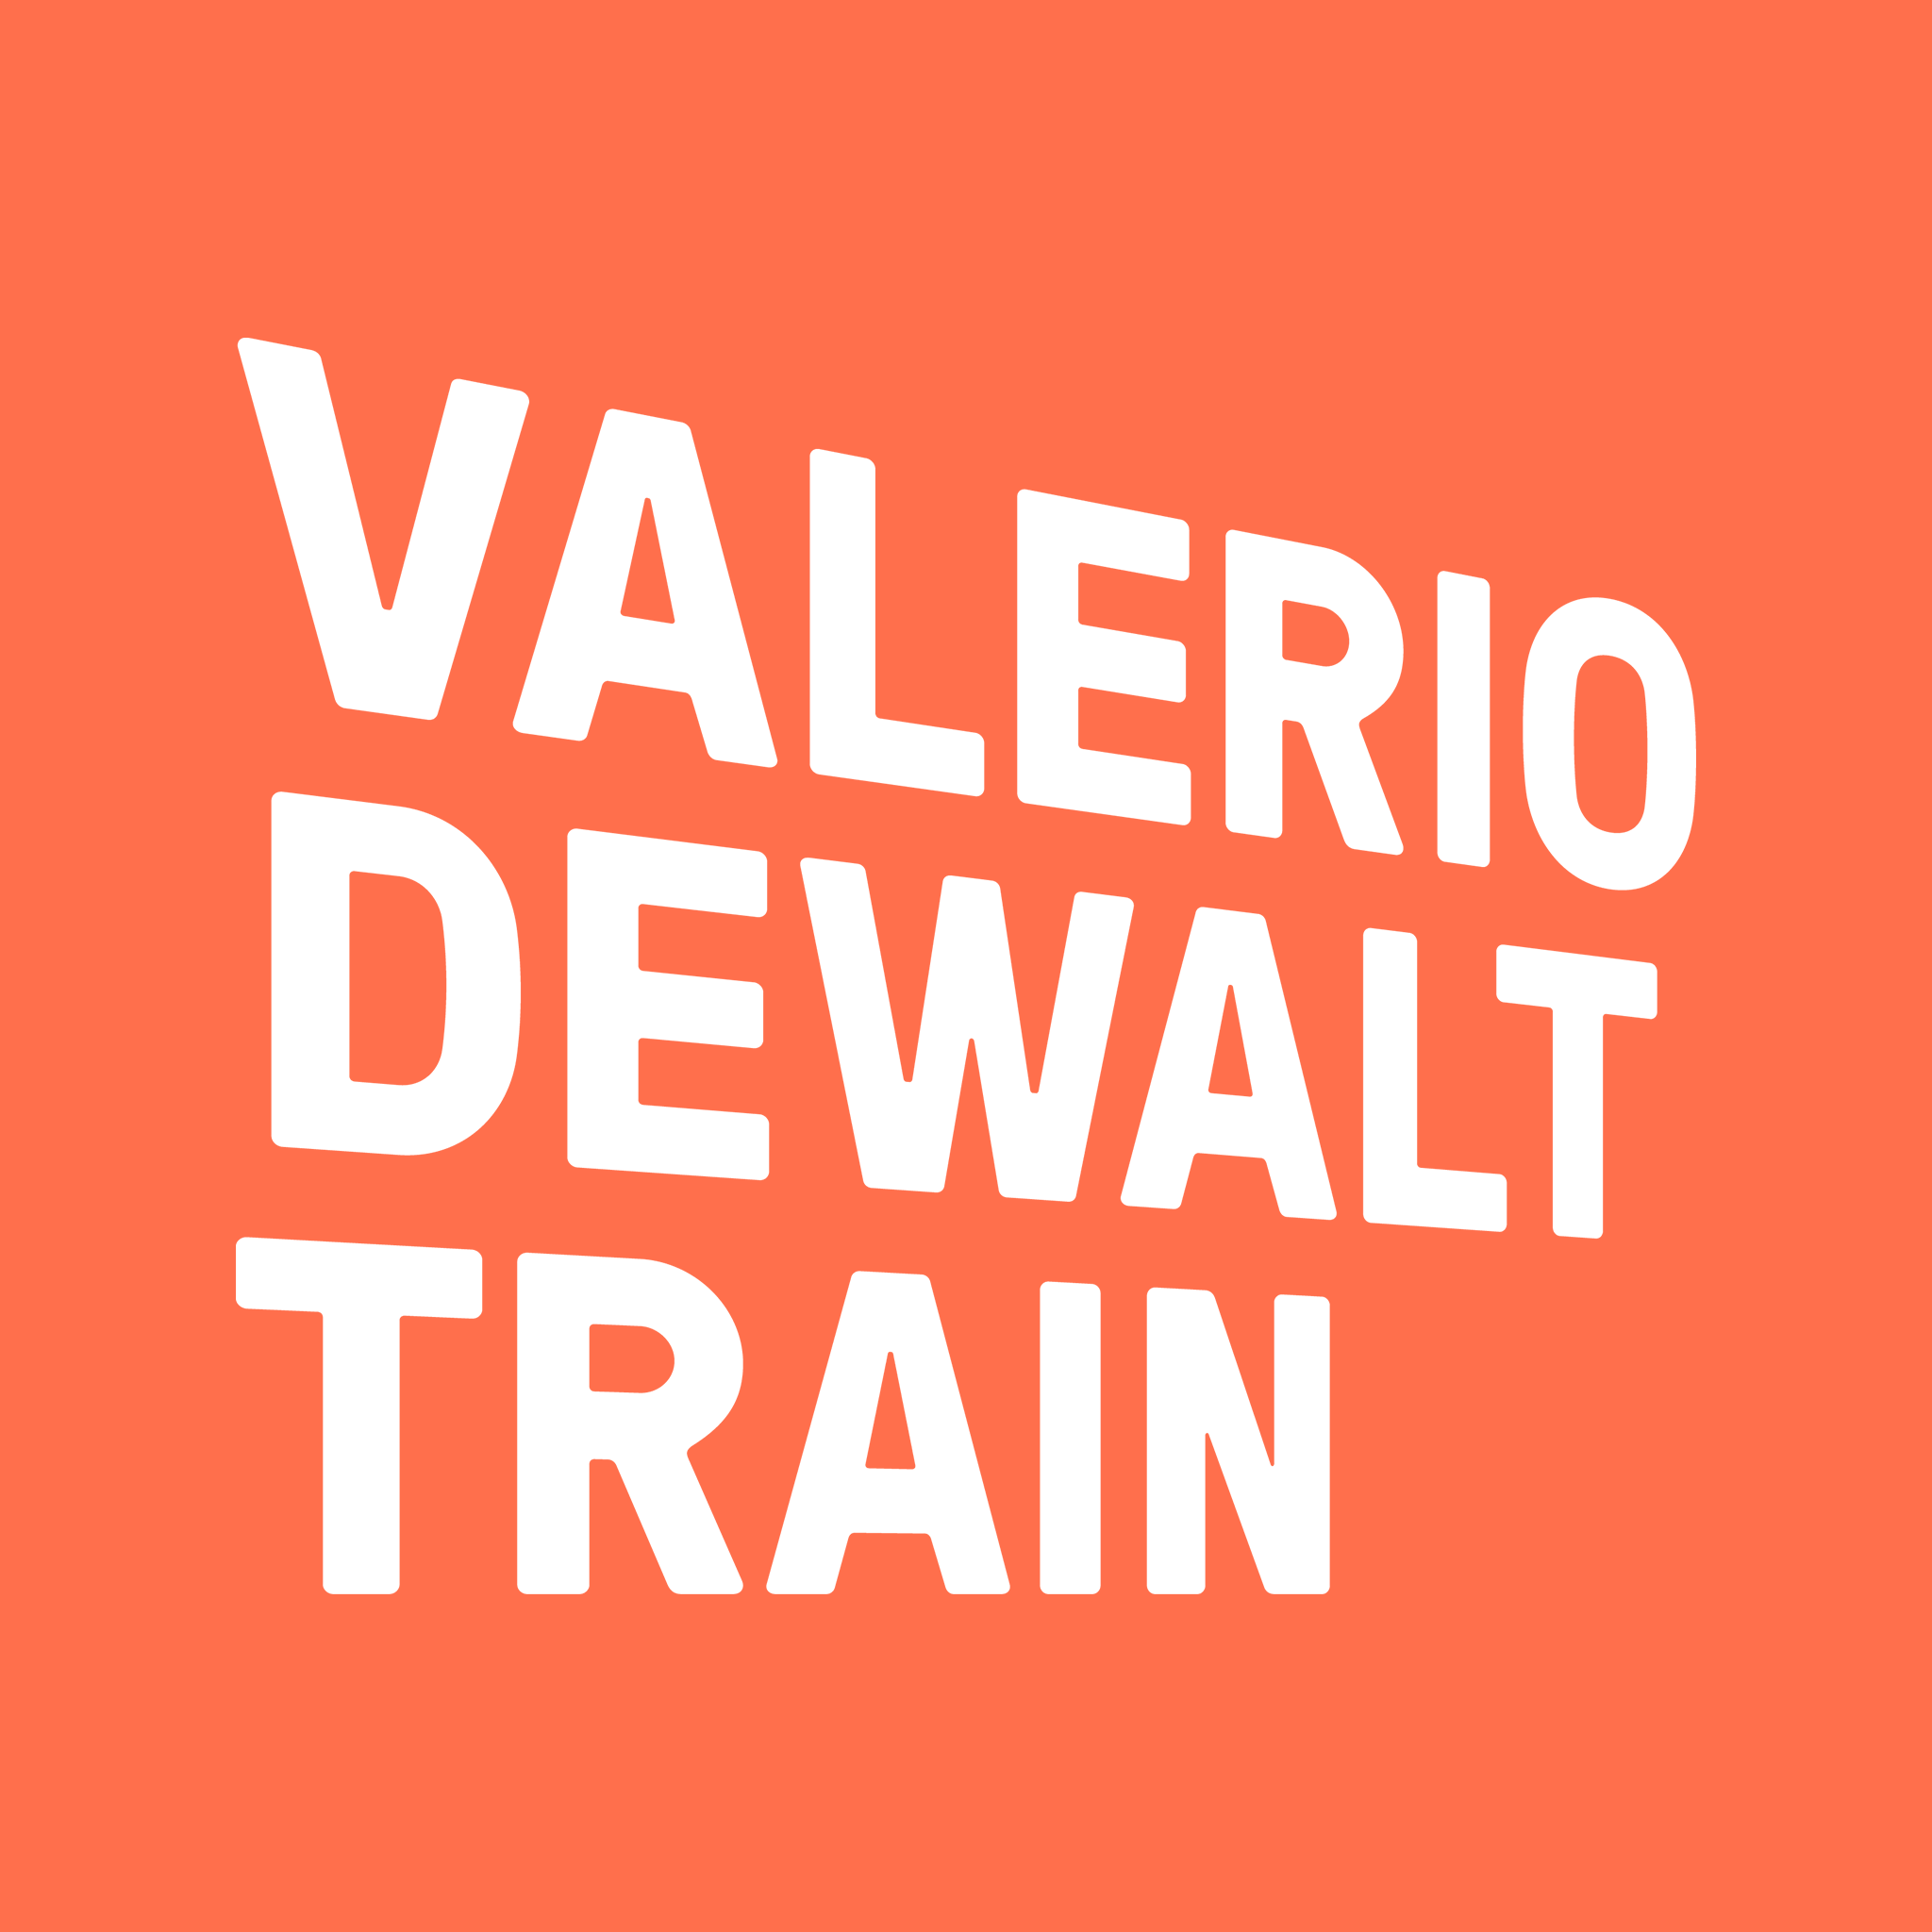 Valerio Dewalt Train Associates